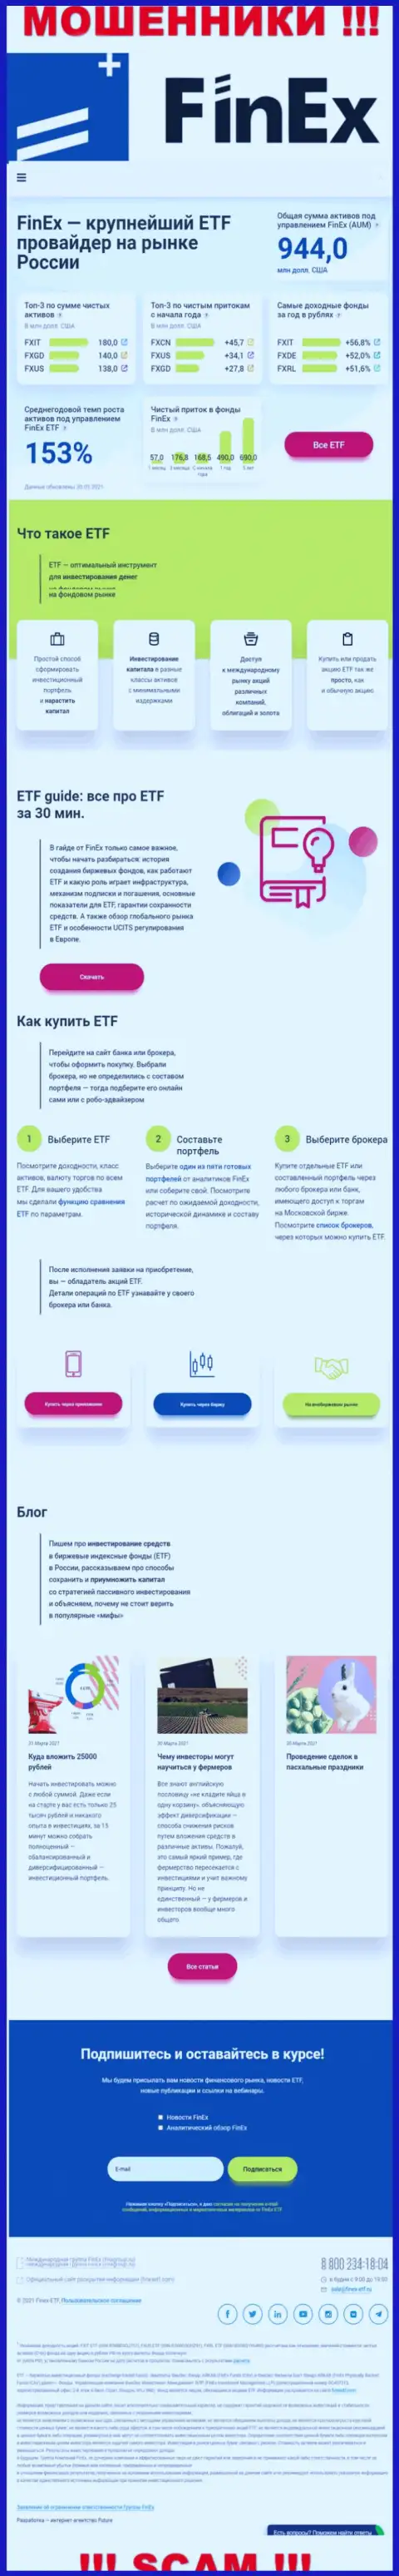 Официальная онлайн страничка мошенников ФинЭкс Инвестмент Менеджмент ЛЛП, с помощью которой они отыскивают клиентов